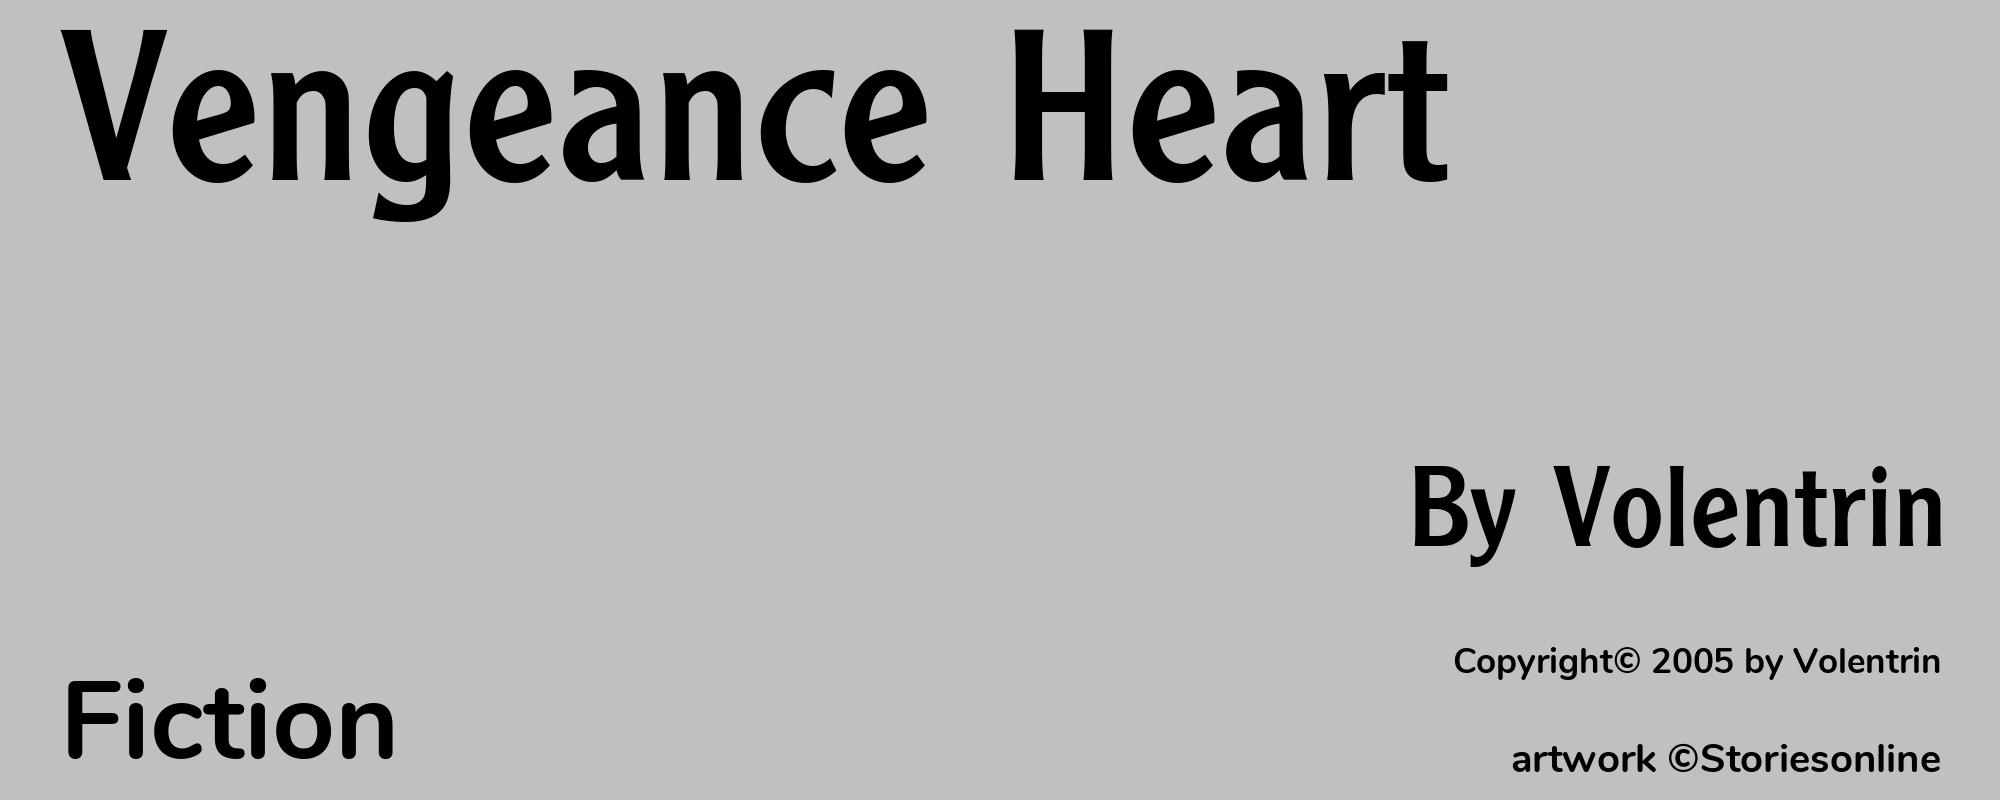 Vengeance Heart - Cover